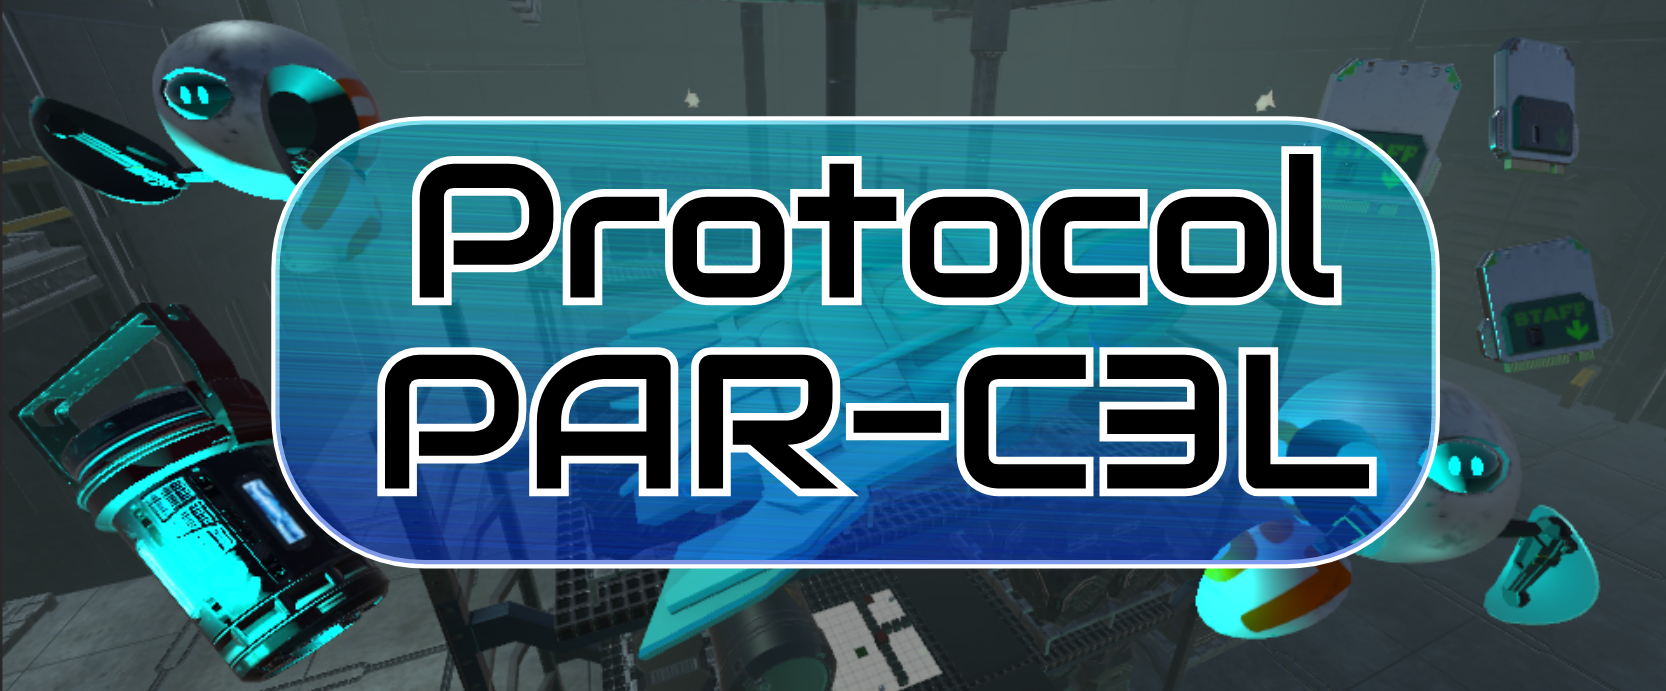 Protocol PAR-C3L VR